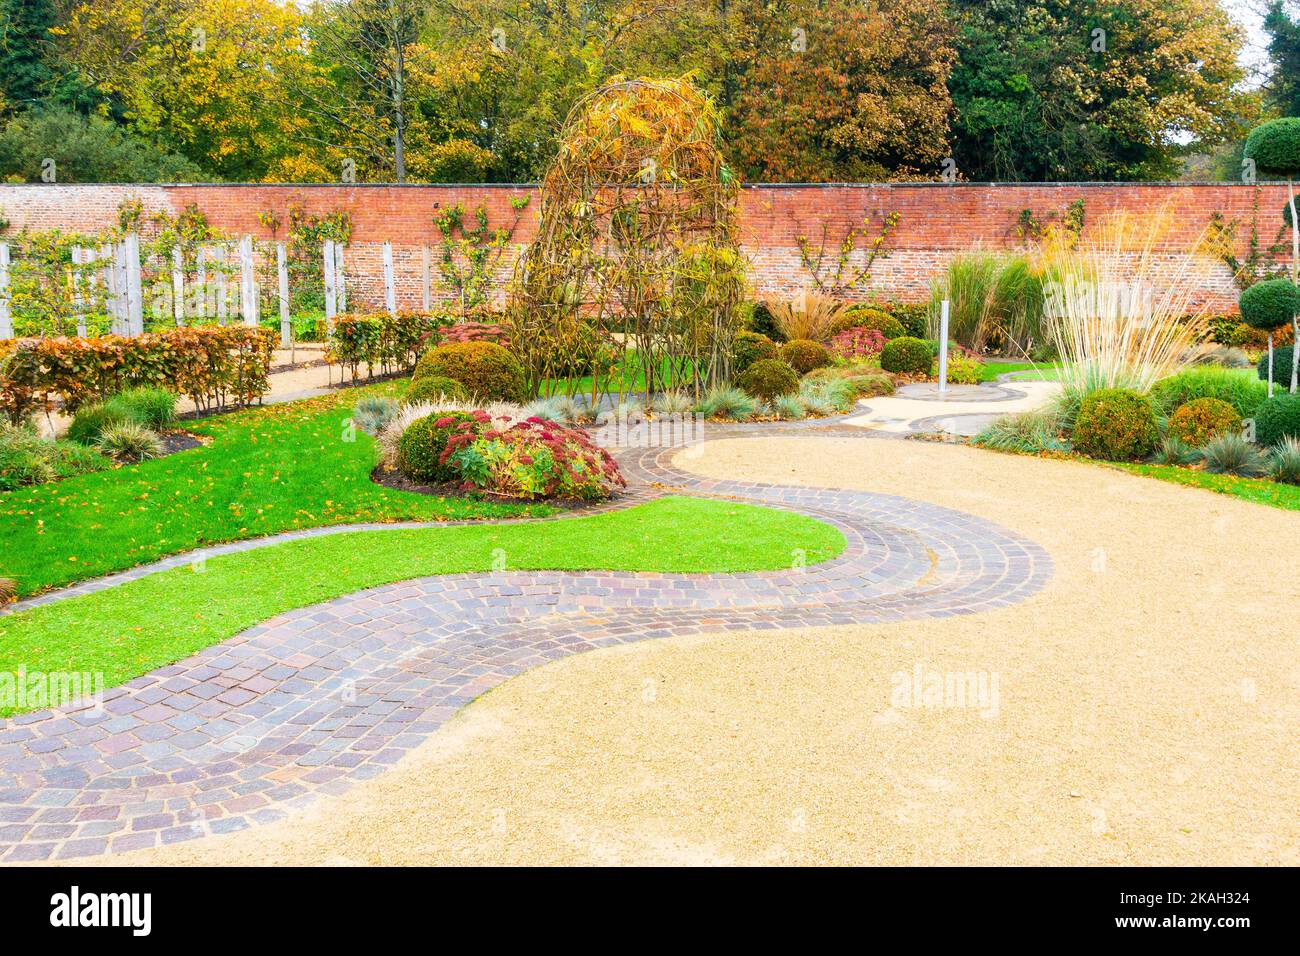 Dans le jardin clos de Kirkleatham, le jardin des Sciences avec un aménagement attrayant près de l'entrée du café Banque D'Images